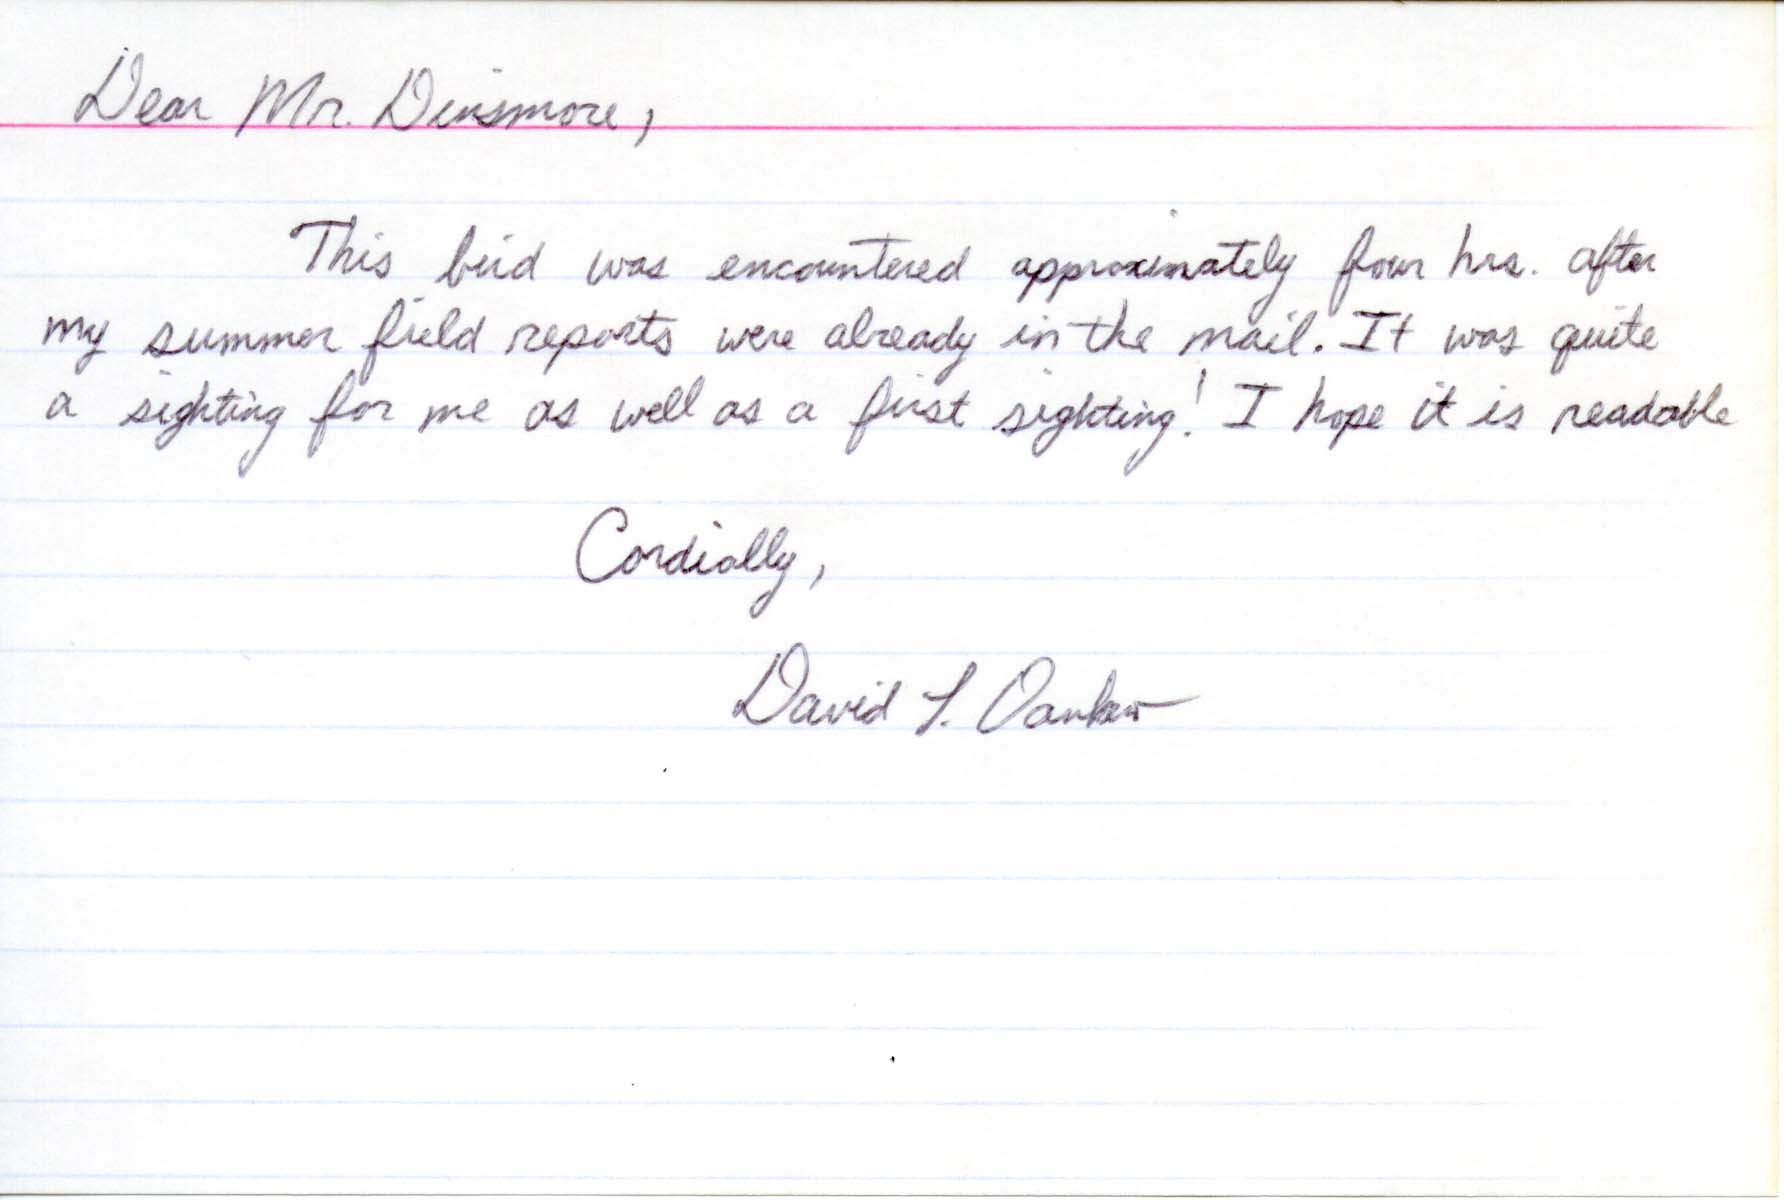 David Dankert note to Jim Dinsmore regarding additional sighting, summer 1995